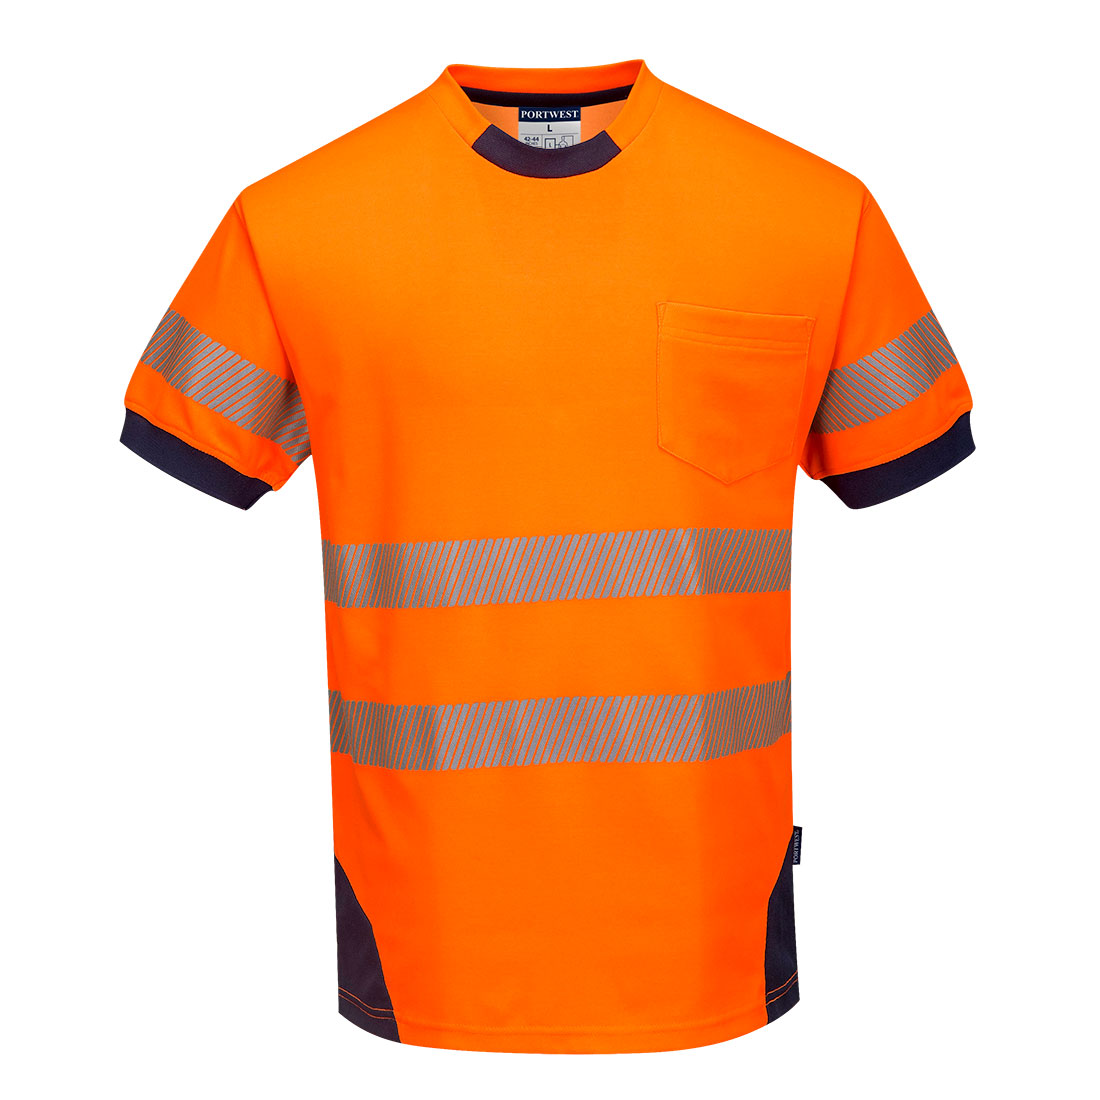 PW3 Hi-Vis T-Shirt S/S Orange - T183 Front